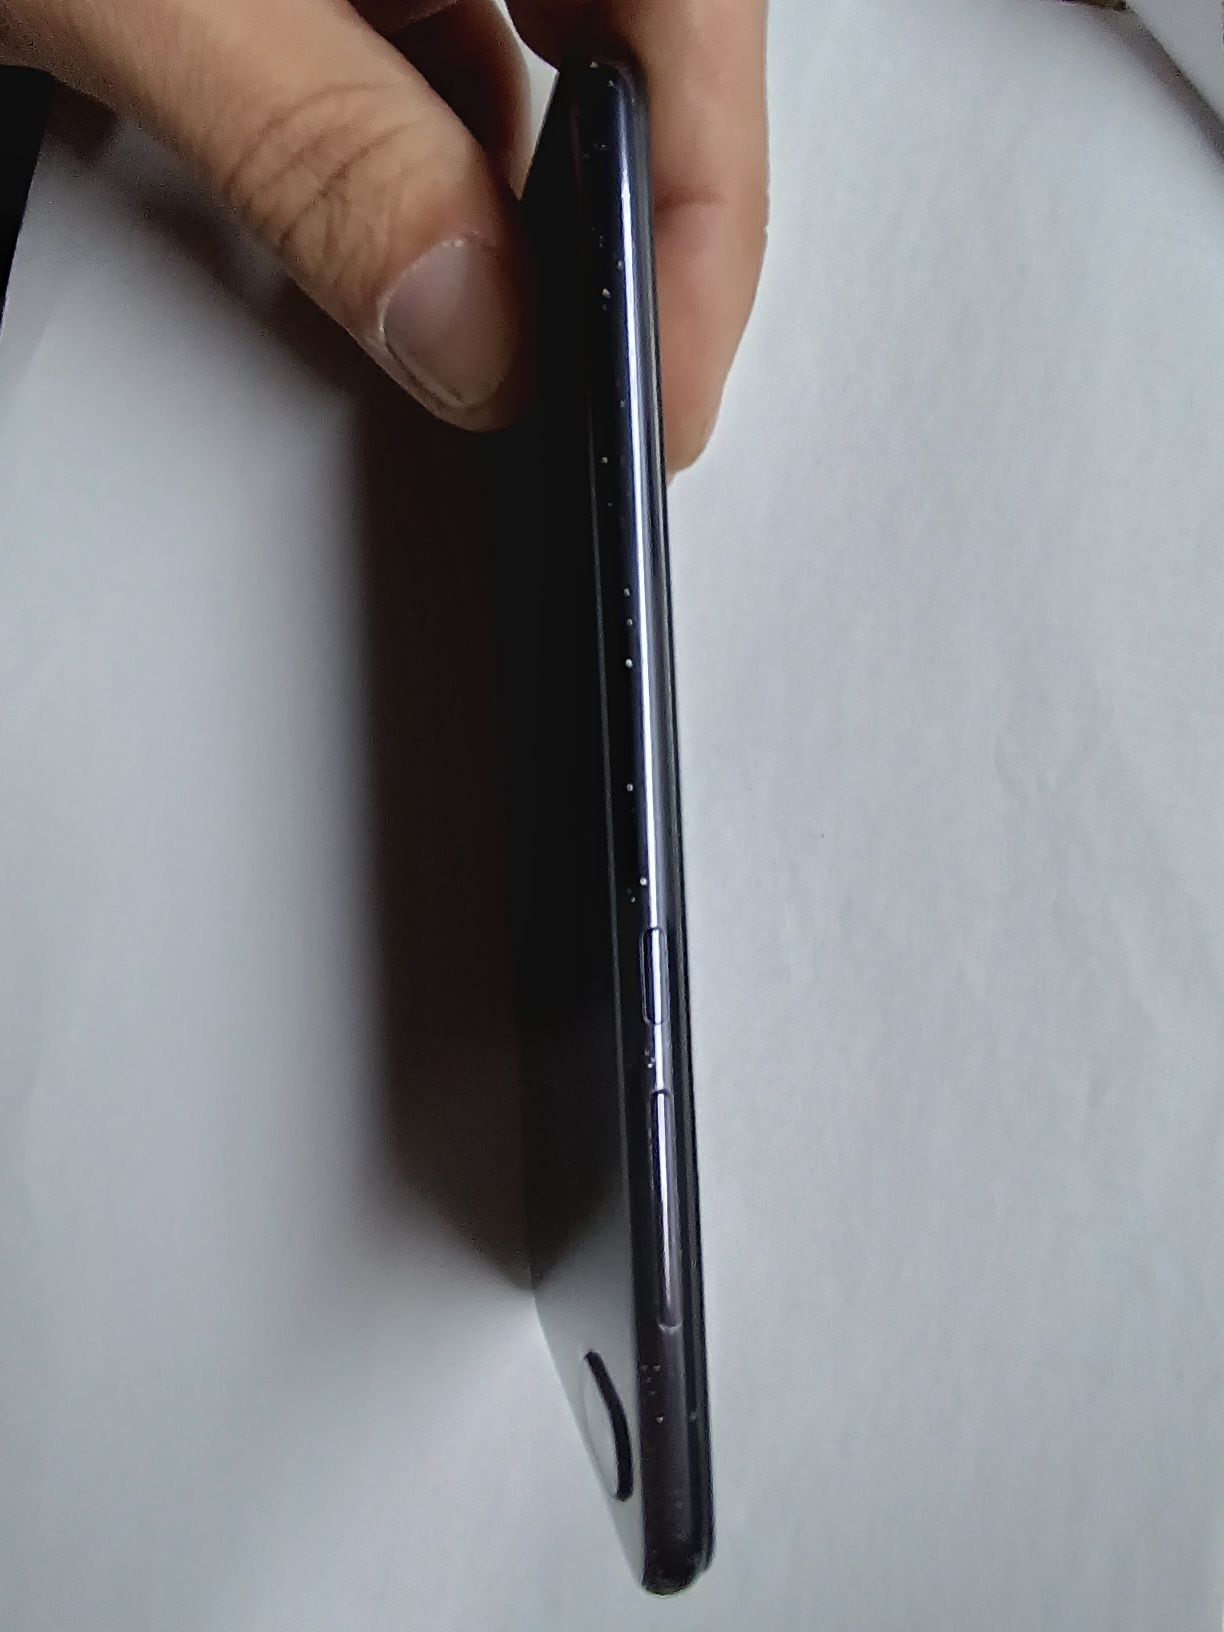 Xiaomi Mi 8 Lite 4/64GB Midnight Black